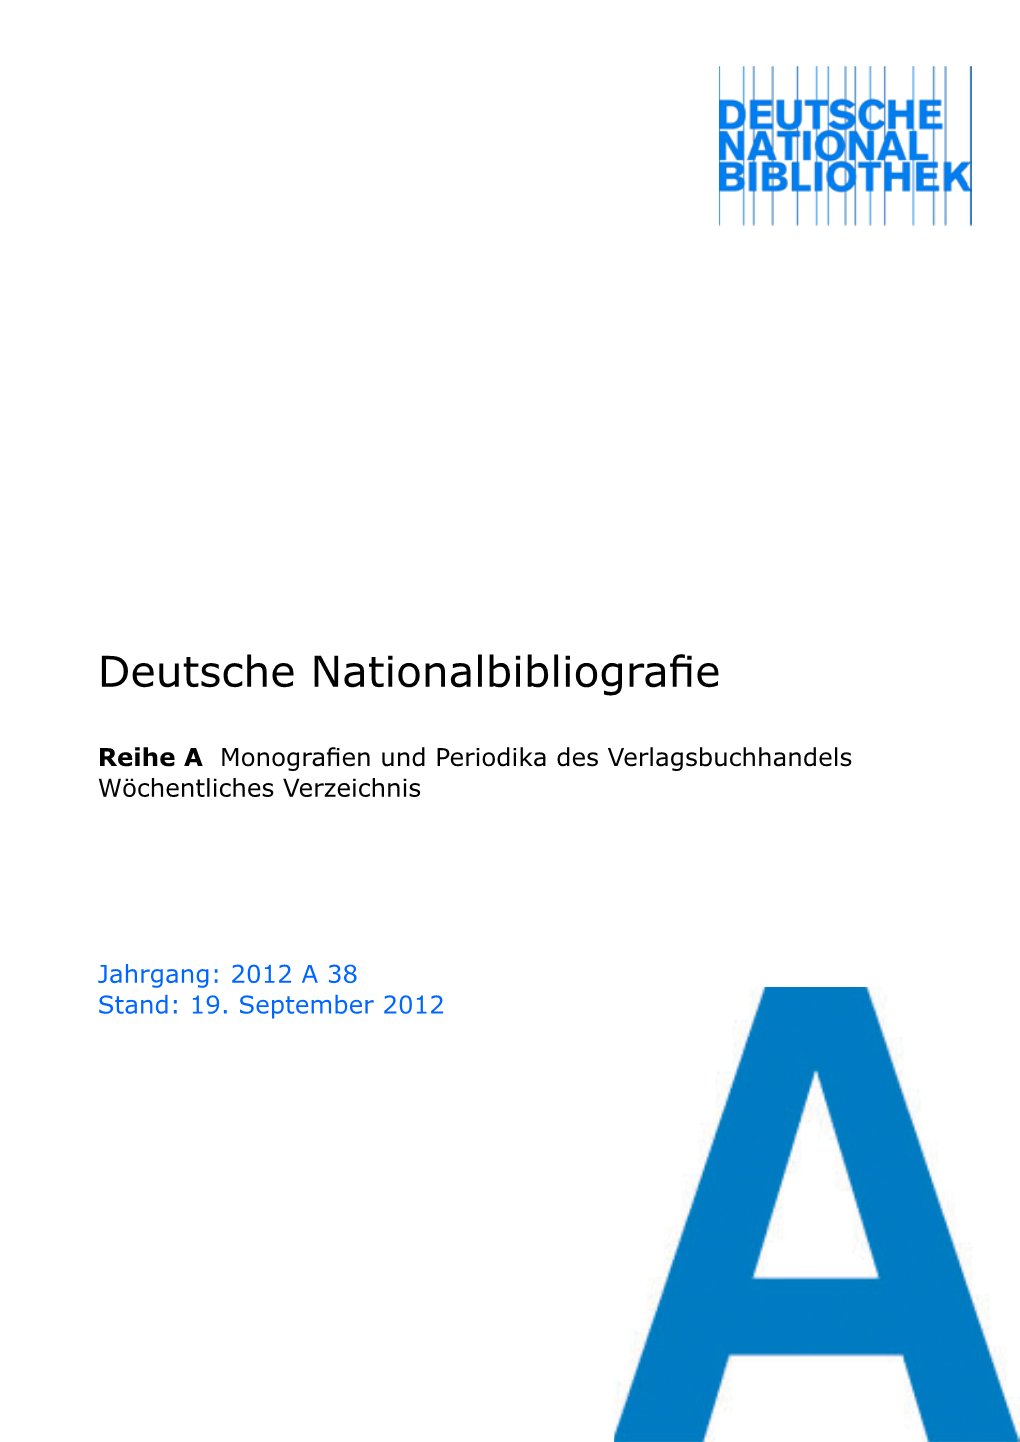 Deutsche Nationalbibliografie 2012 a 38